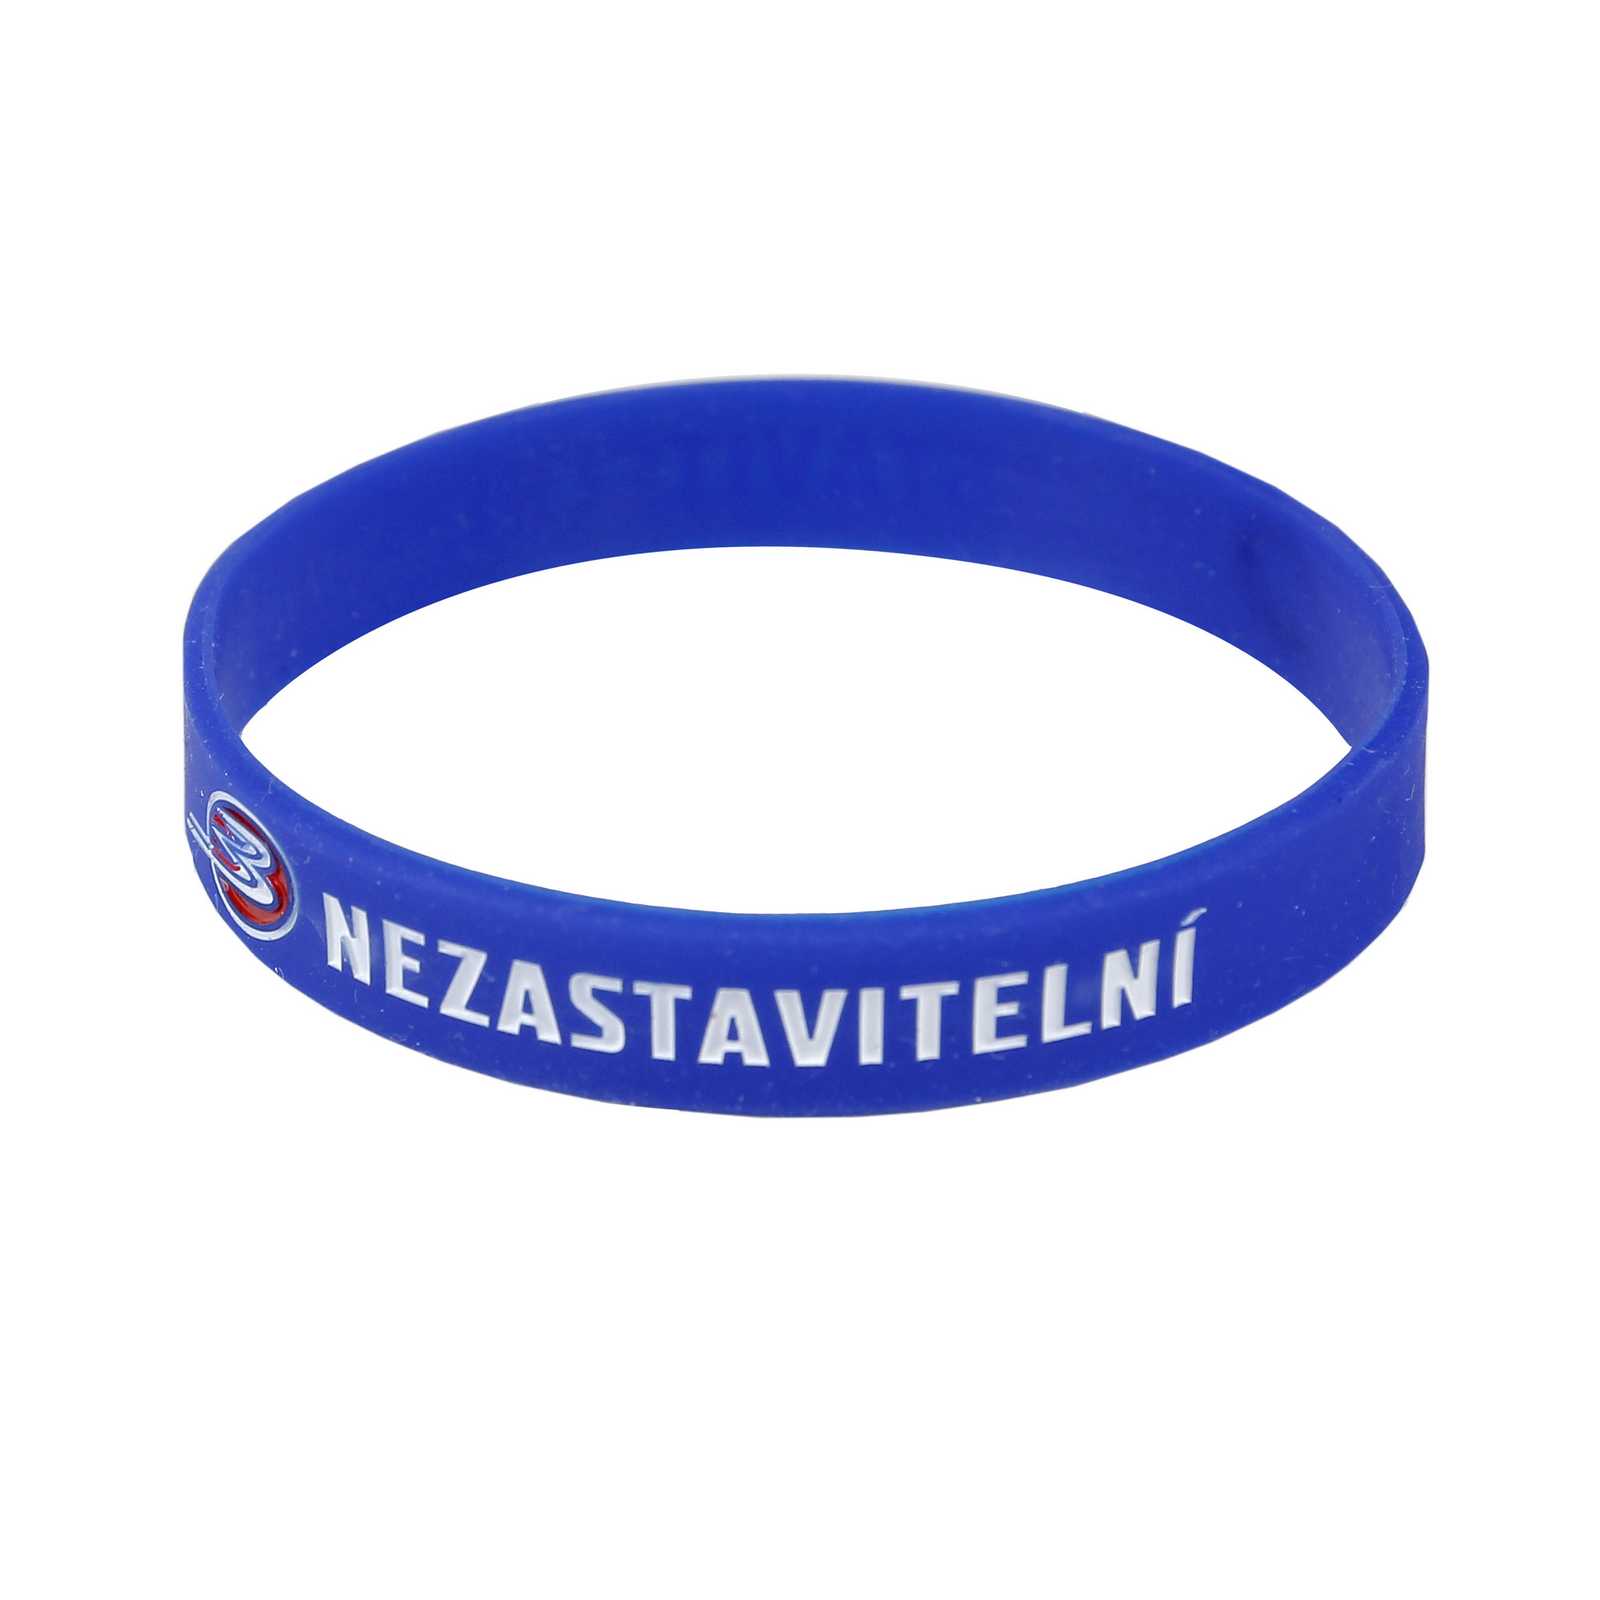 Nezastavitelní (Unstoppable) wristband from Birell